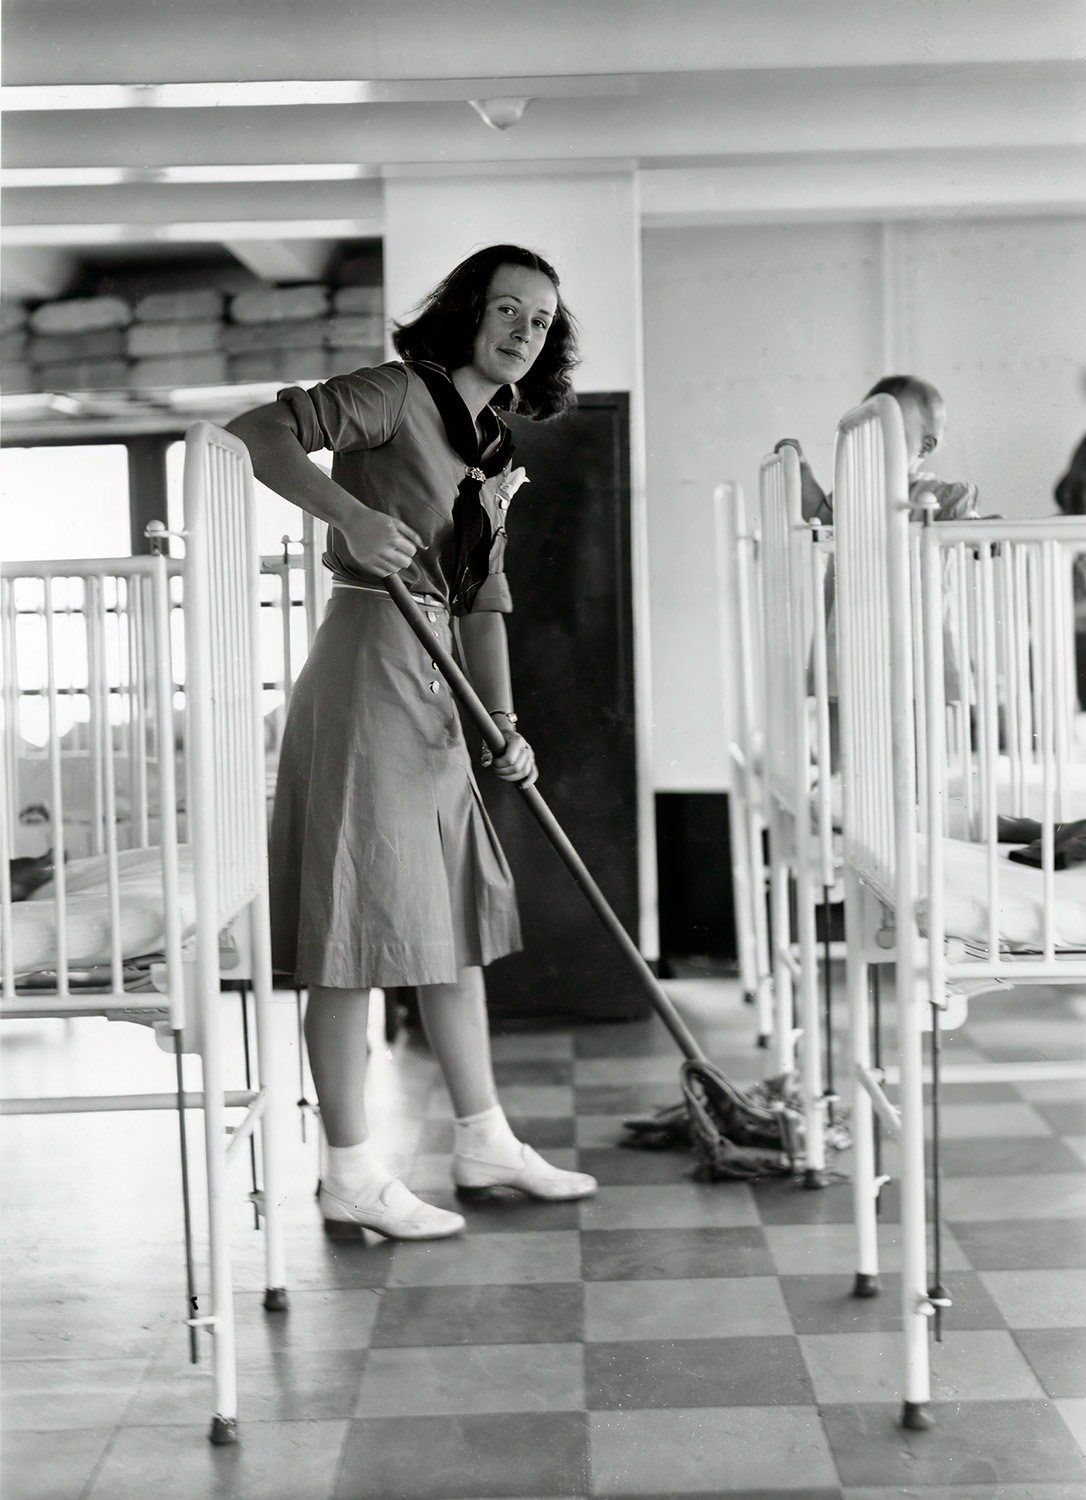 Mariner Girl Scout sweeps the nursery floor